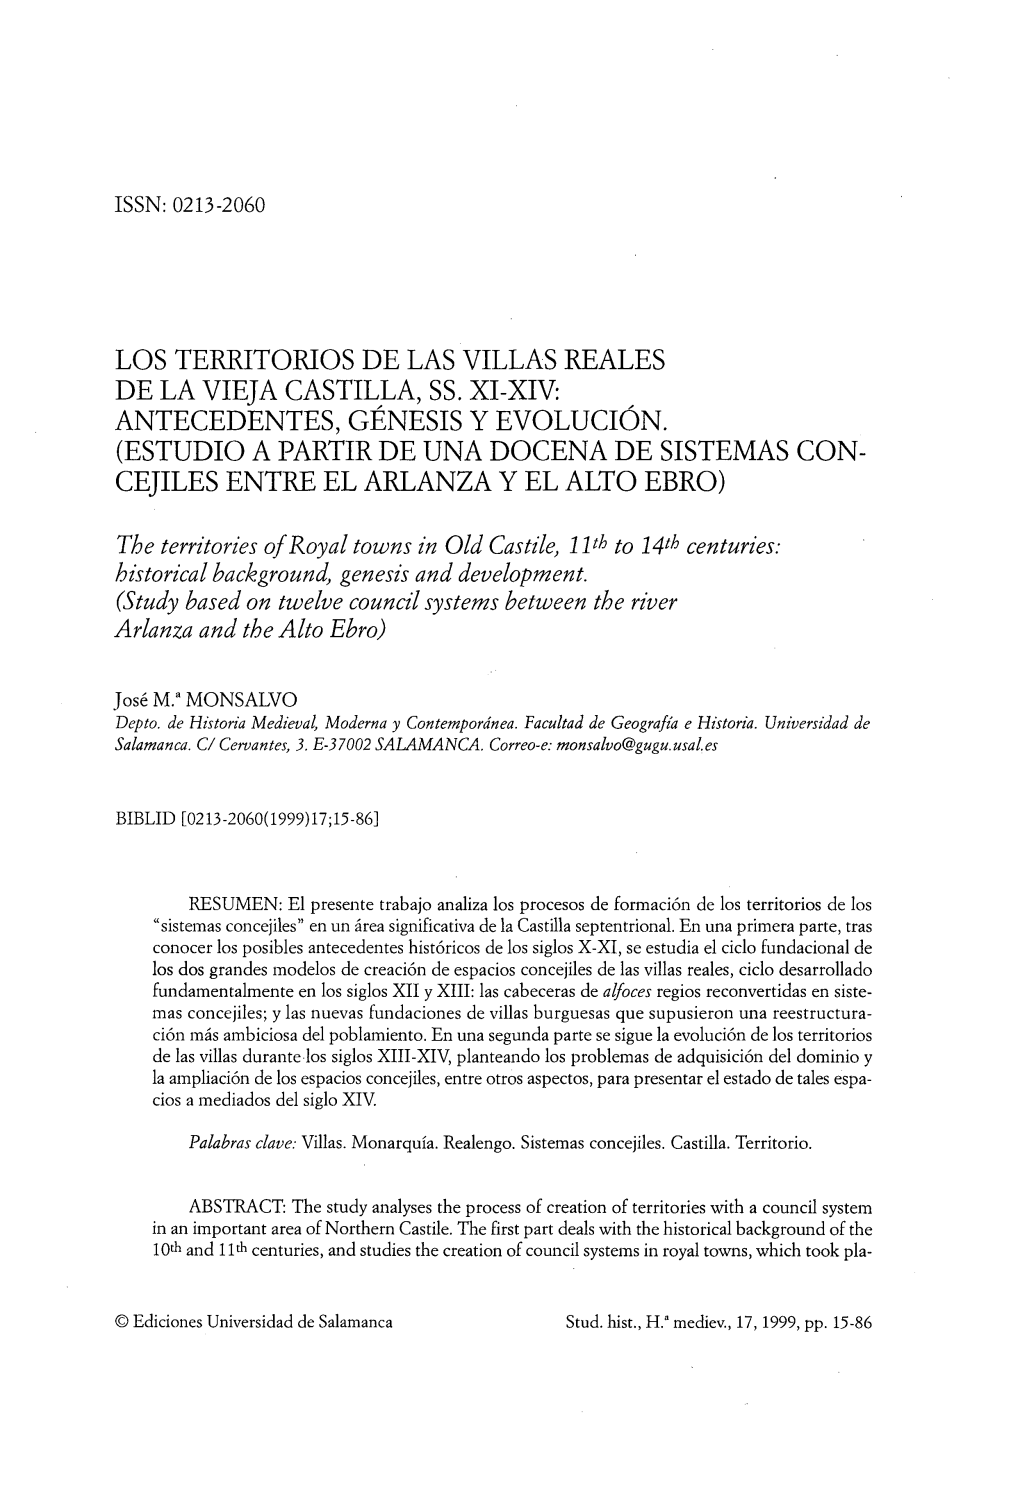 Los Territorios De Las Villas Reales De La Vieja Castilla, Ss. Xi-Xiv: Antecedentes, Génesis Y Evolución